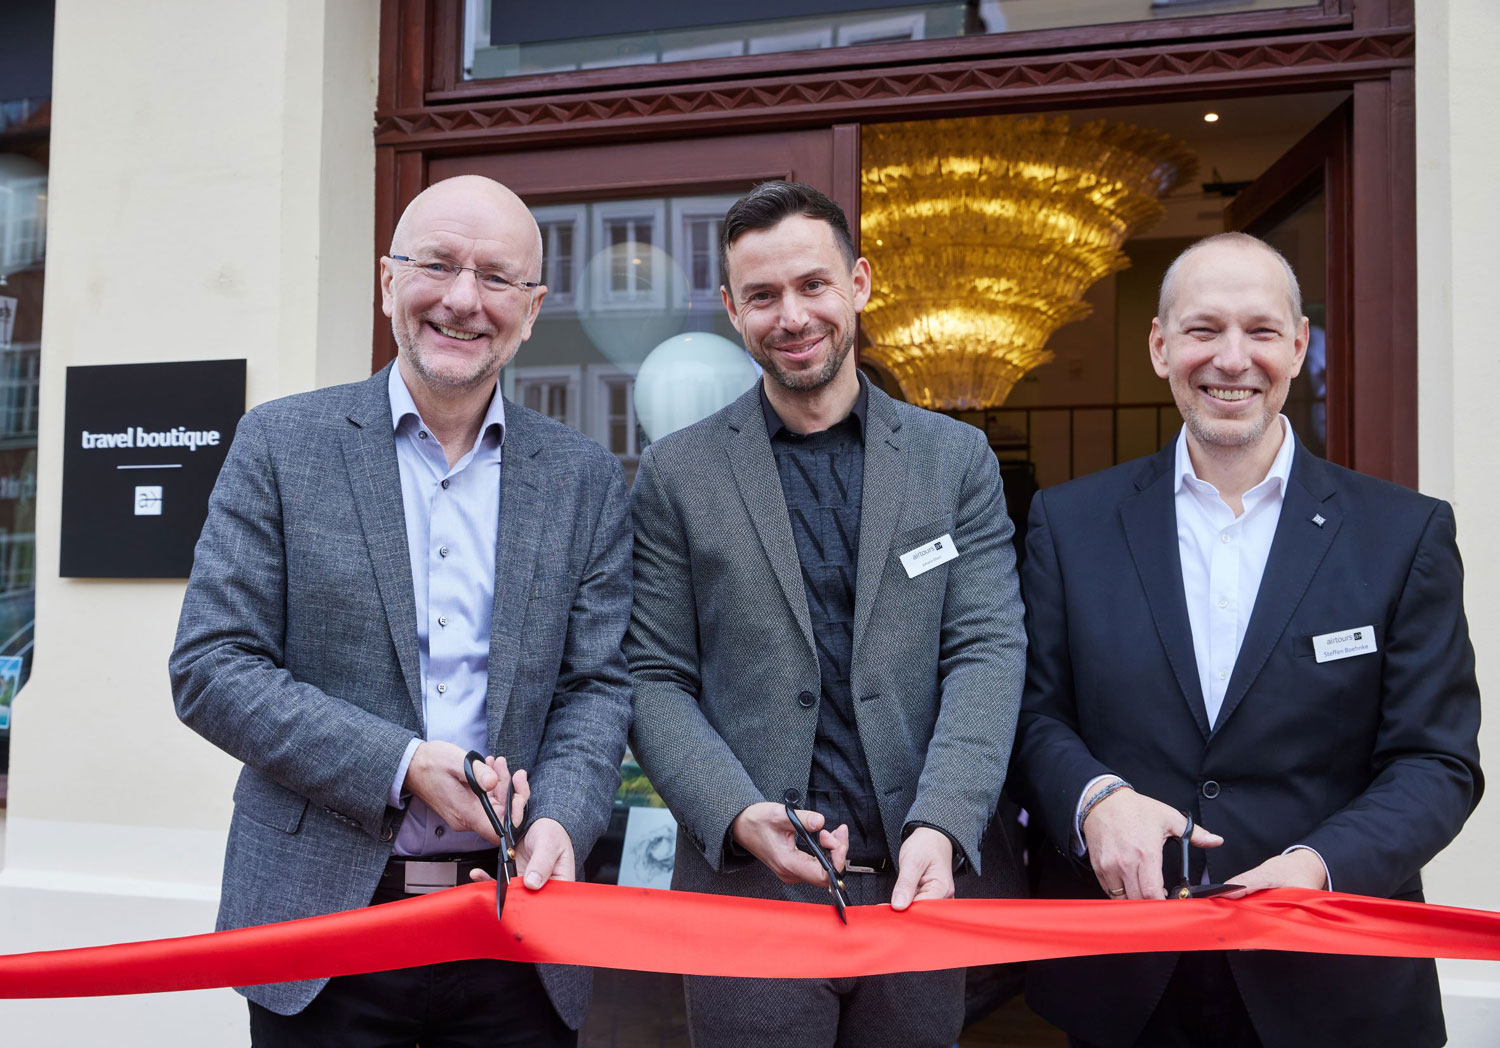 Bei der Eröffnung (von links): Alexander Putz, Oberbürgermeister von Landshut, Reisebüro-Inhaber Johann Eberl und Airtours-Chef Steffen Boehnke. Foto: Airtours